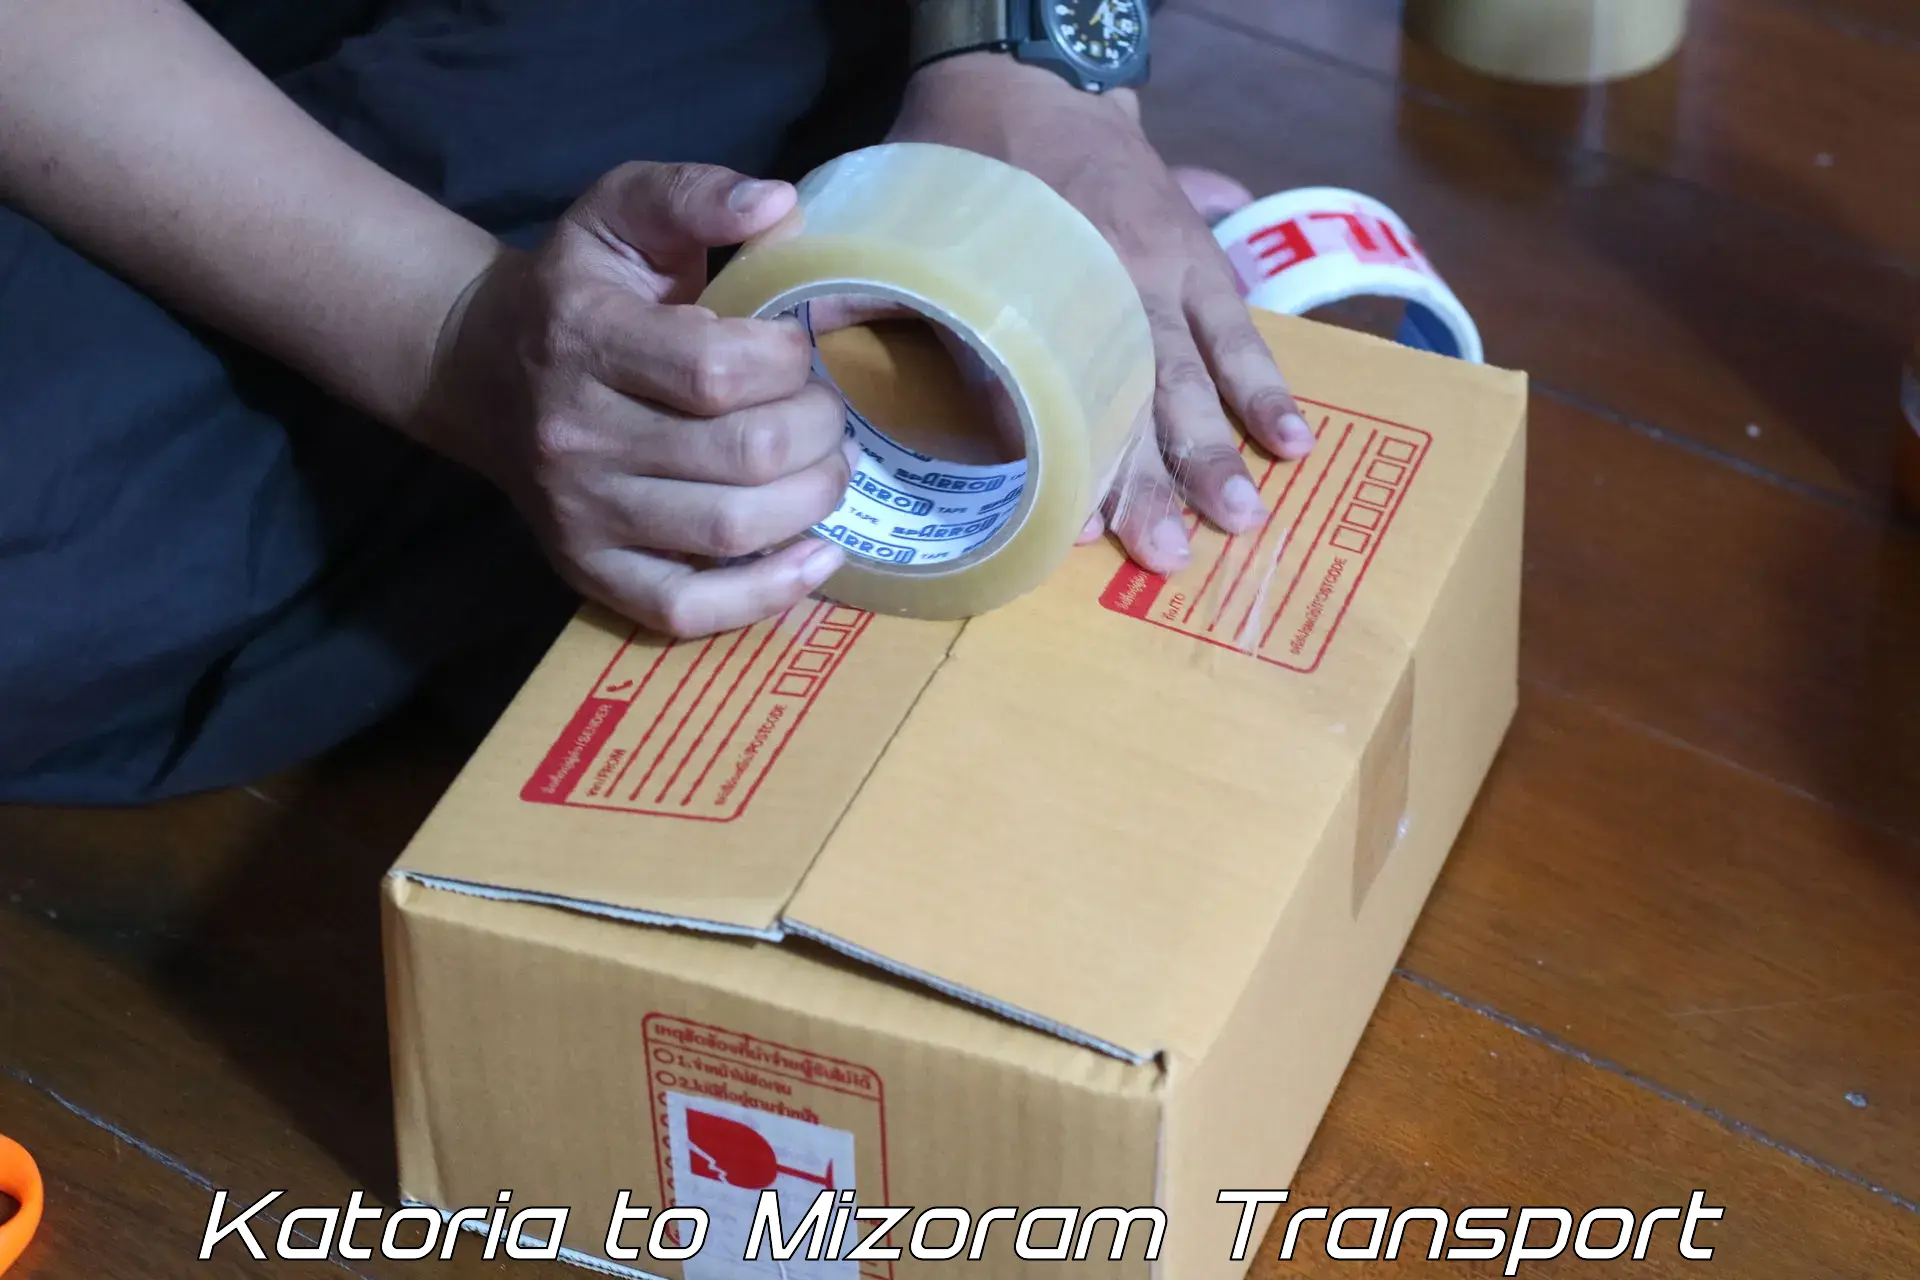 Container transport service Katoria to Mizoram